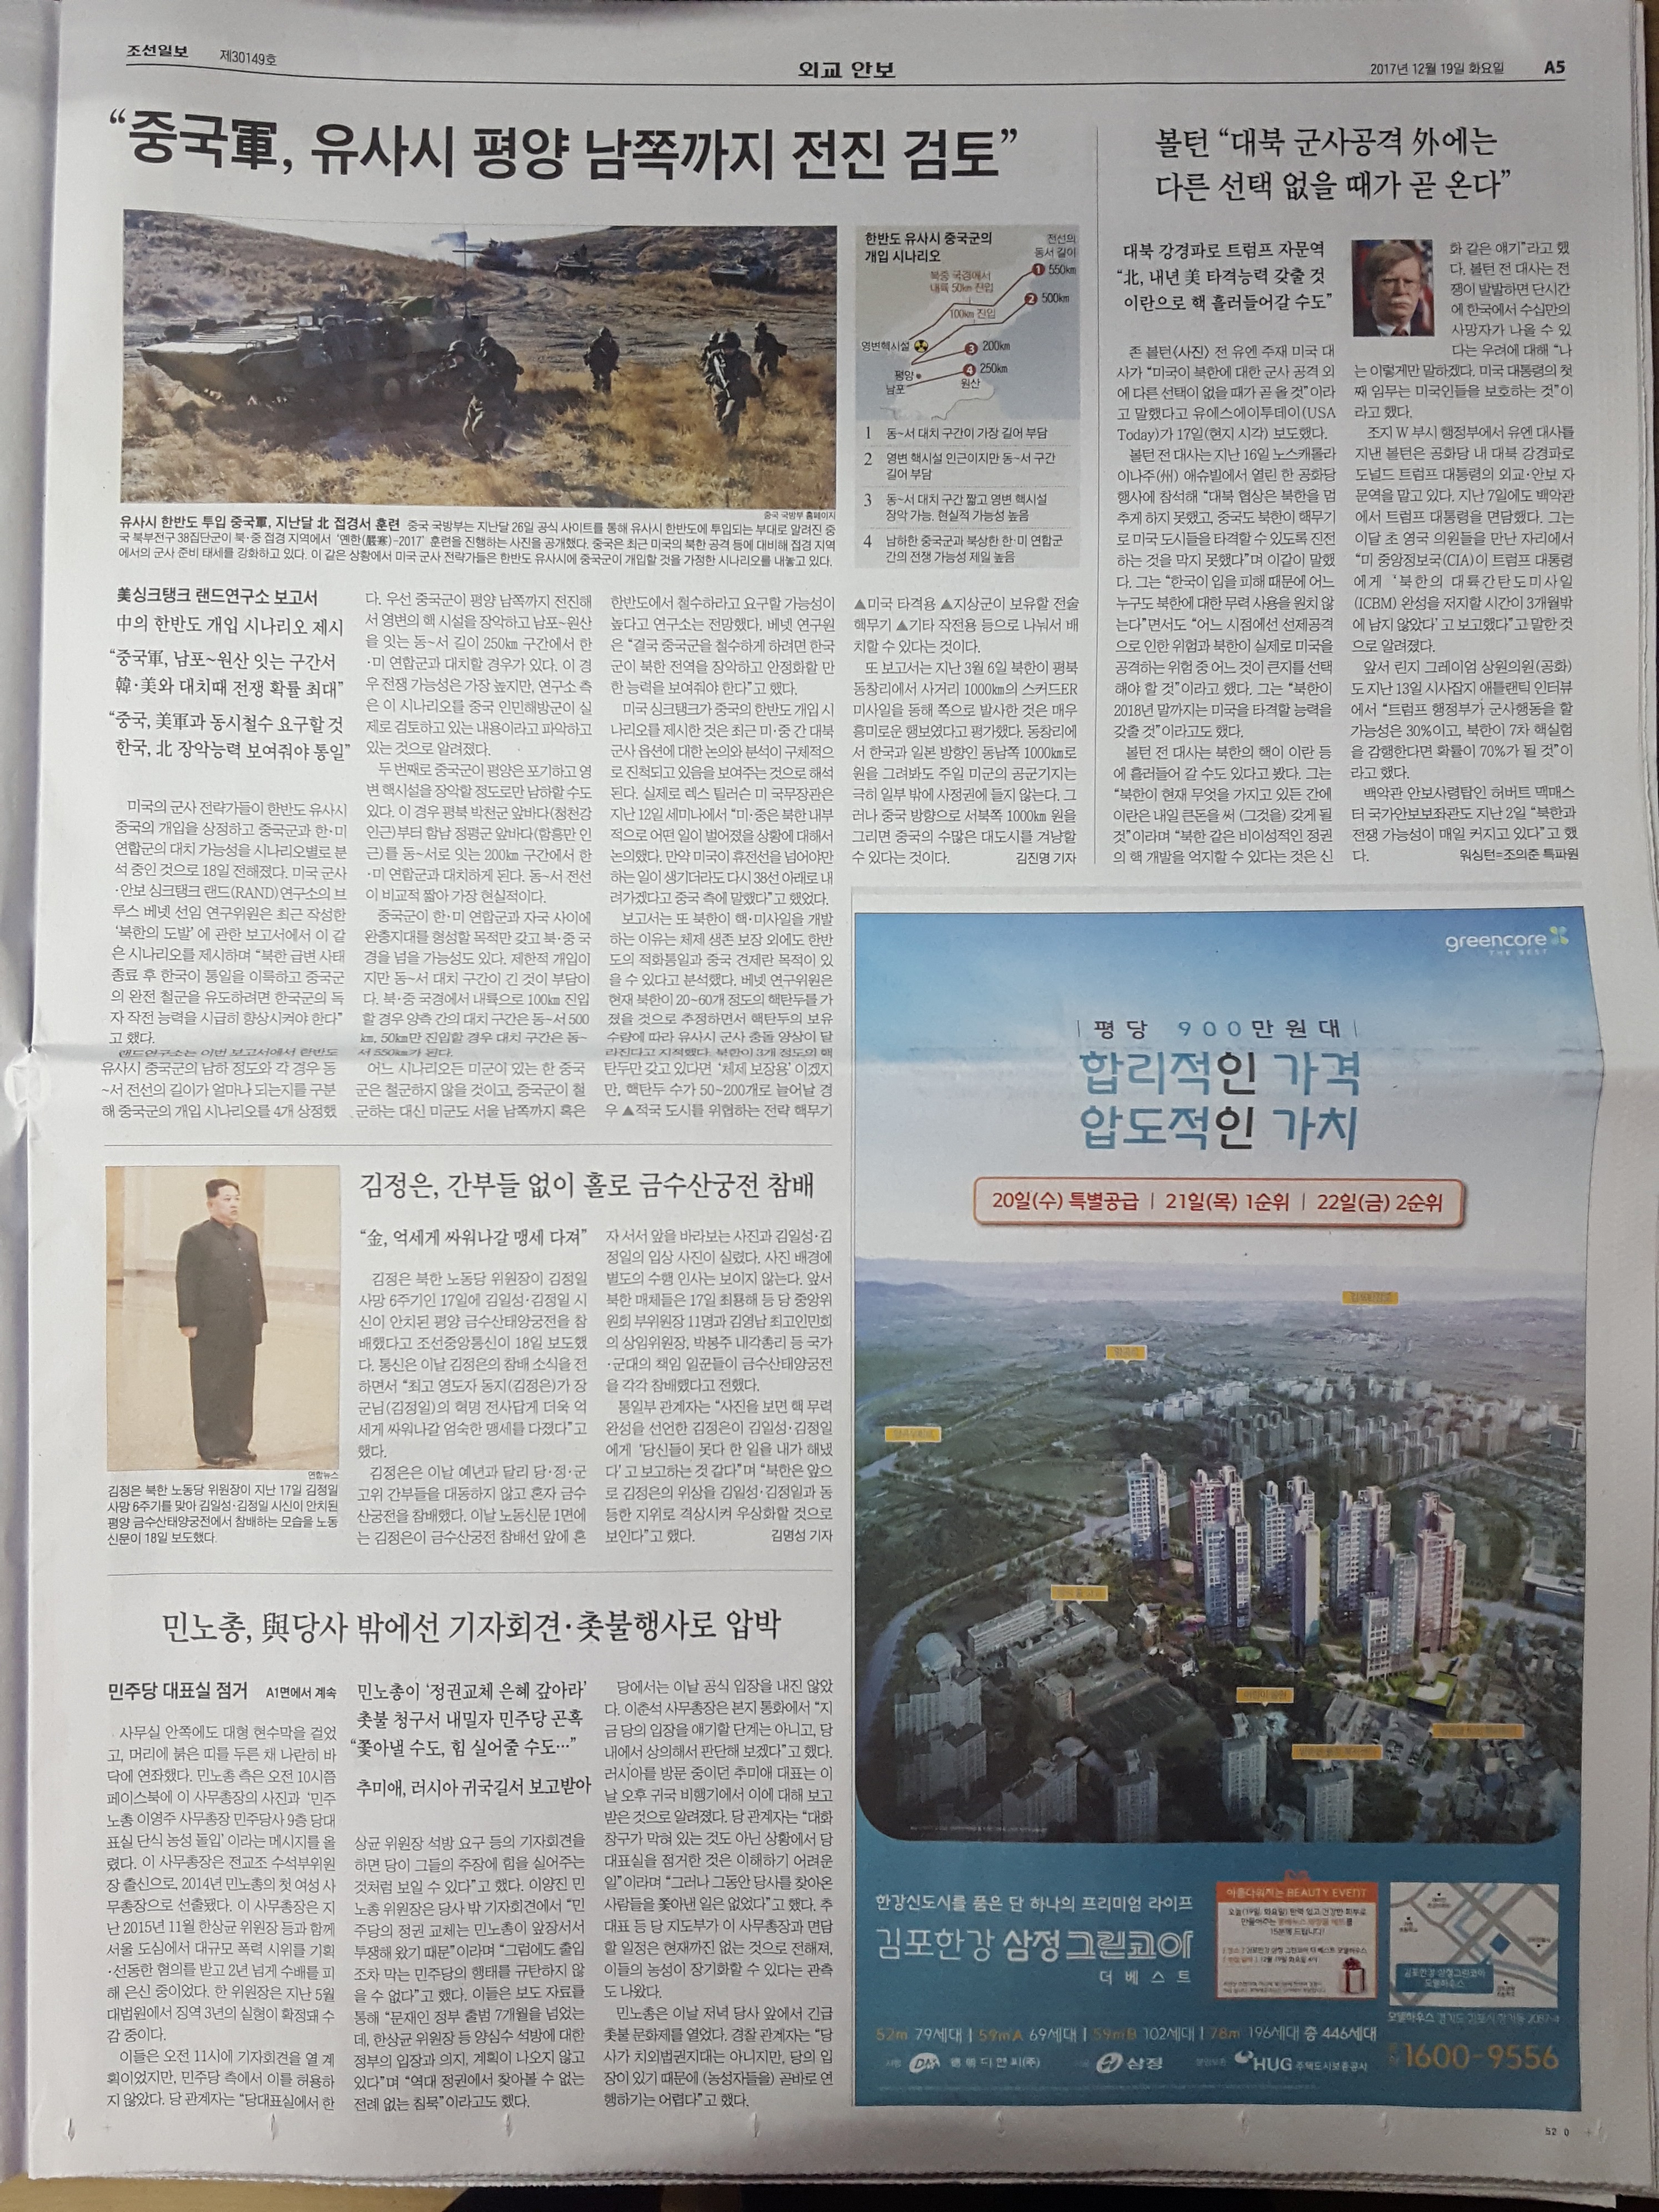 11월 19일 조선일보 김포 한강 삼정 그린코아 - 9단 21.jpg